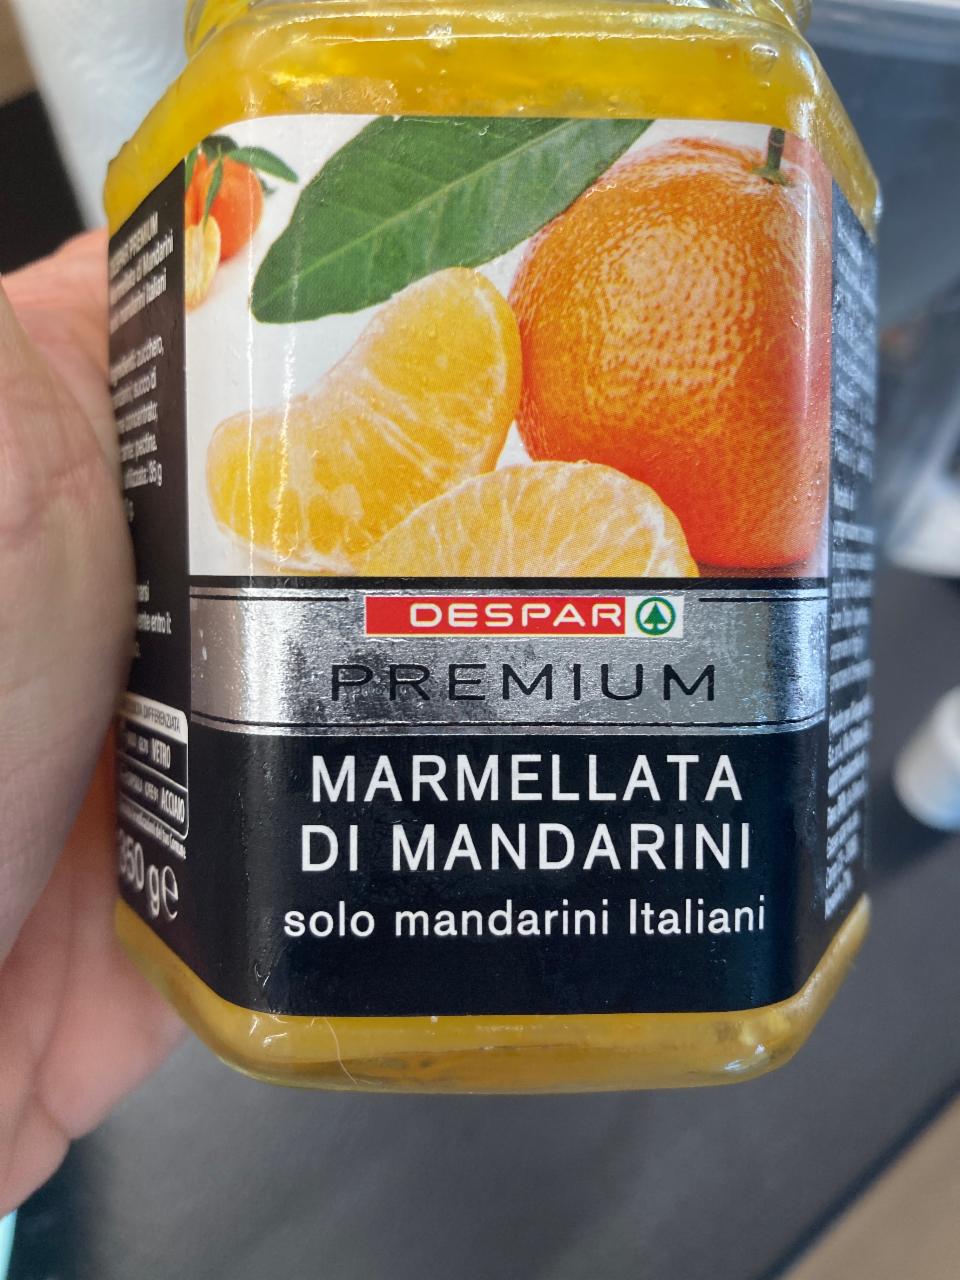 Fotografie - Marmellata di mandarini DeSpar Premium